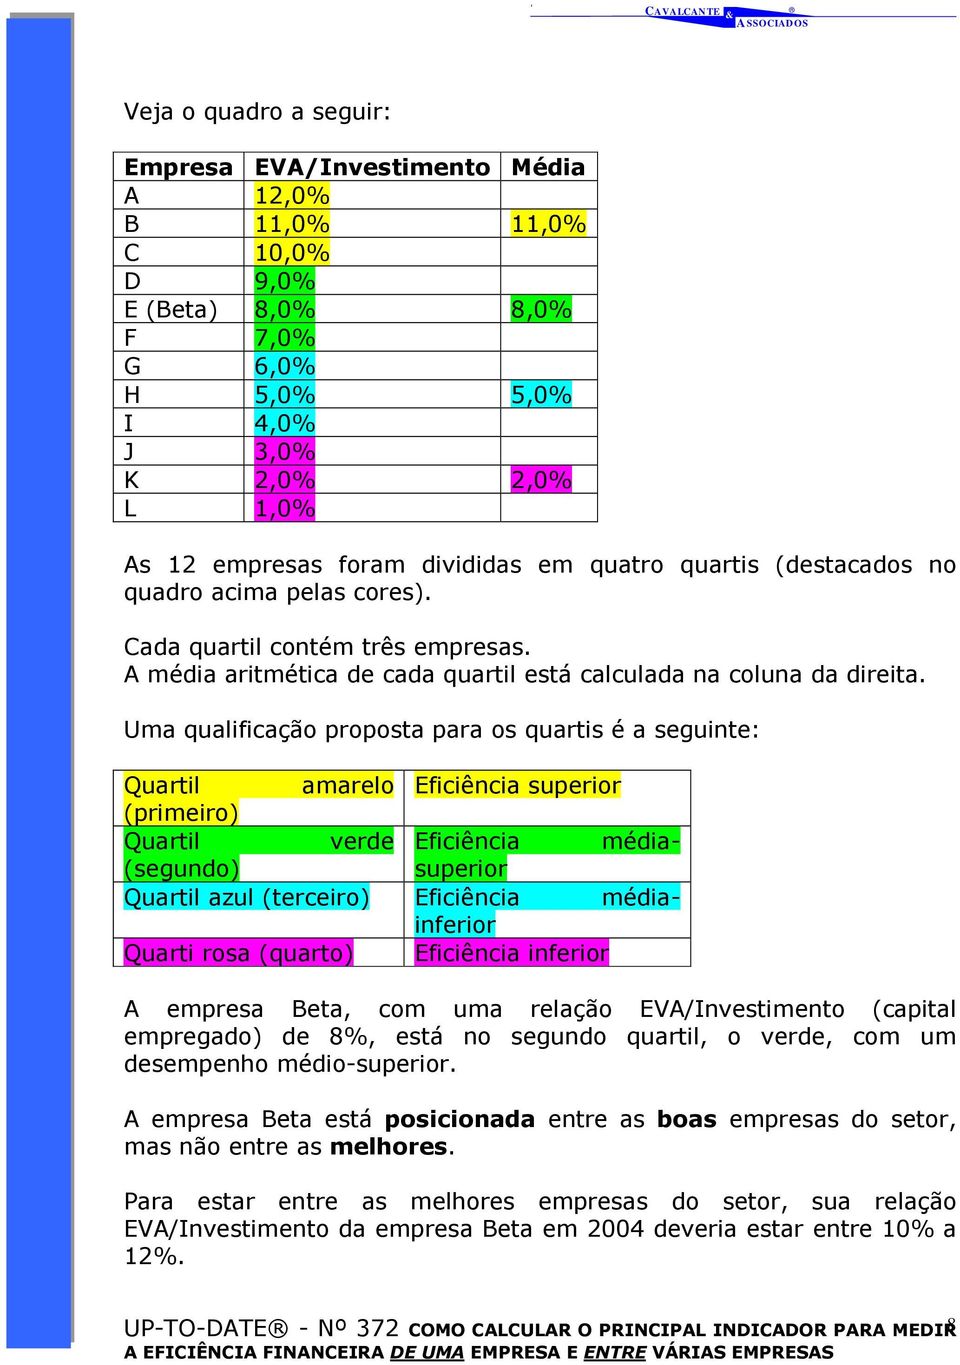 Uma qualificação proposta para os quartis é a seguinte: Quartil amarelo Eficiência superior (primeiro) Quartil verde Eficiência médiasuperior (segundo) Quartil azul (terceiro) Eficiência